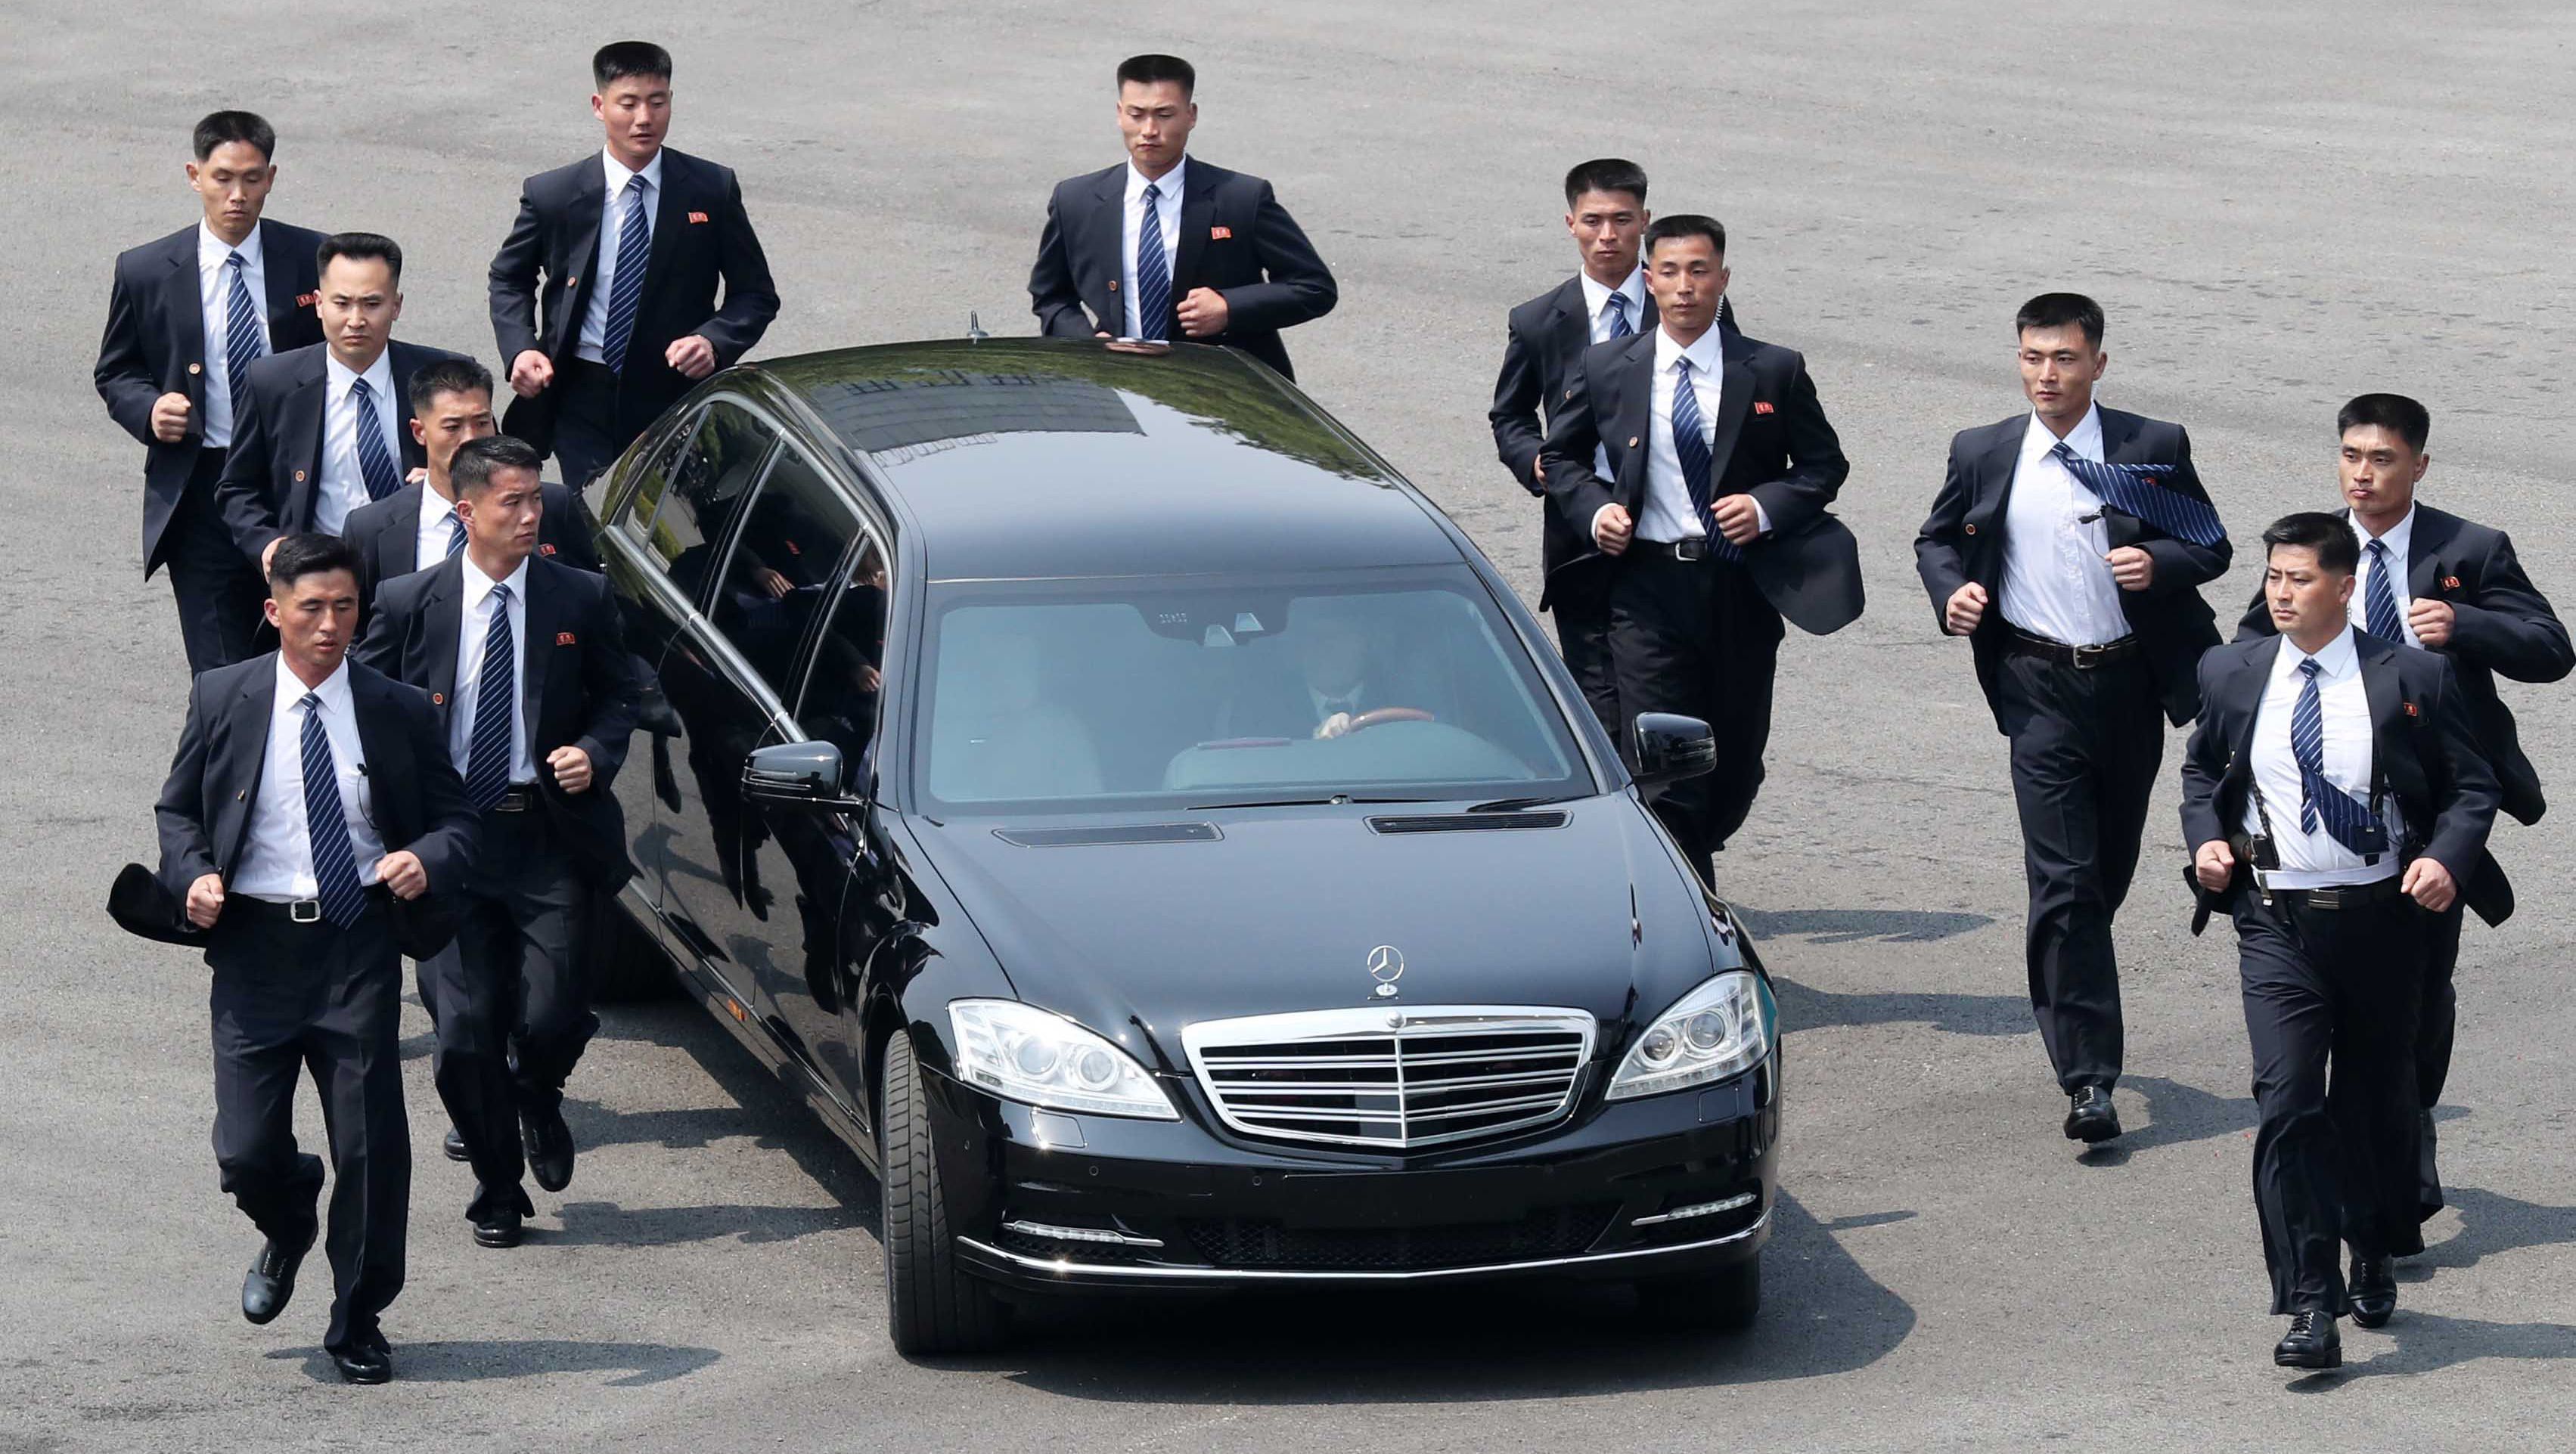 سر امتلاك زعيم كوريا الشمالية سيارات مرسيدس بولمان المحظورة على بلاده